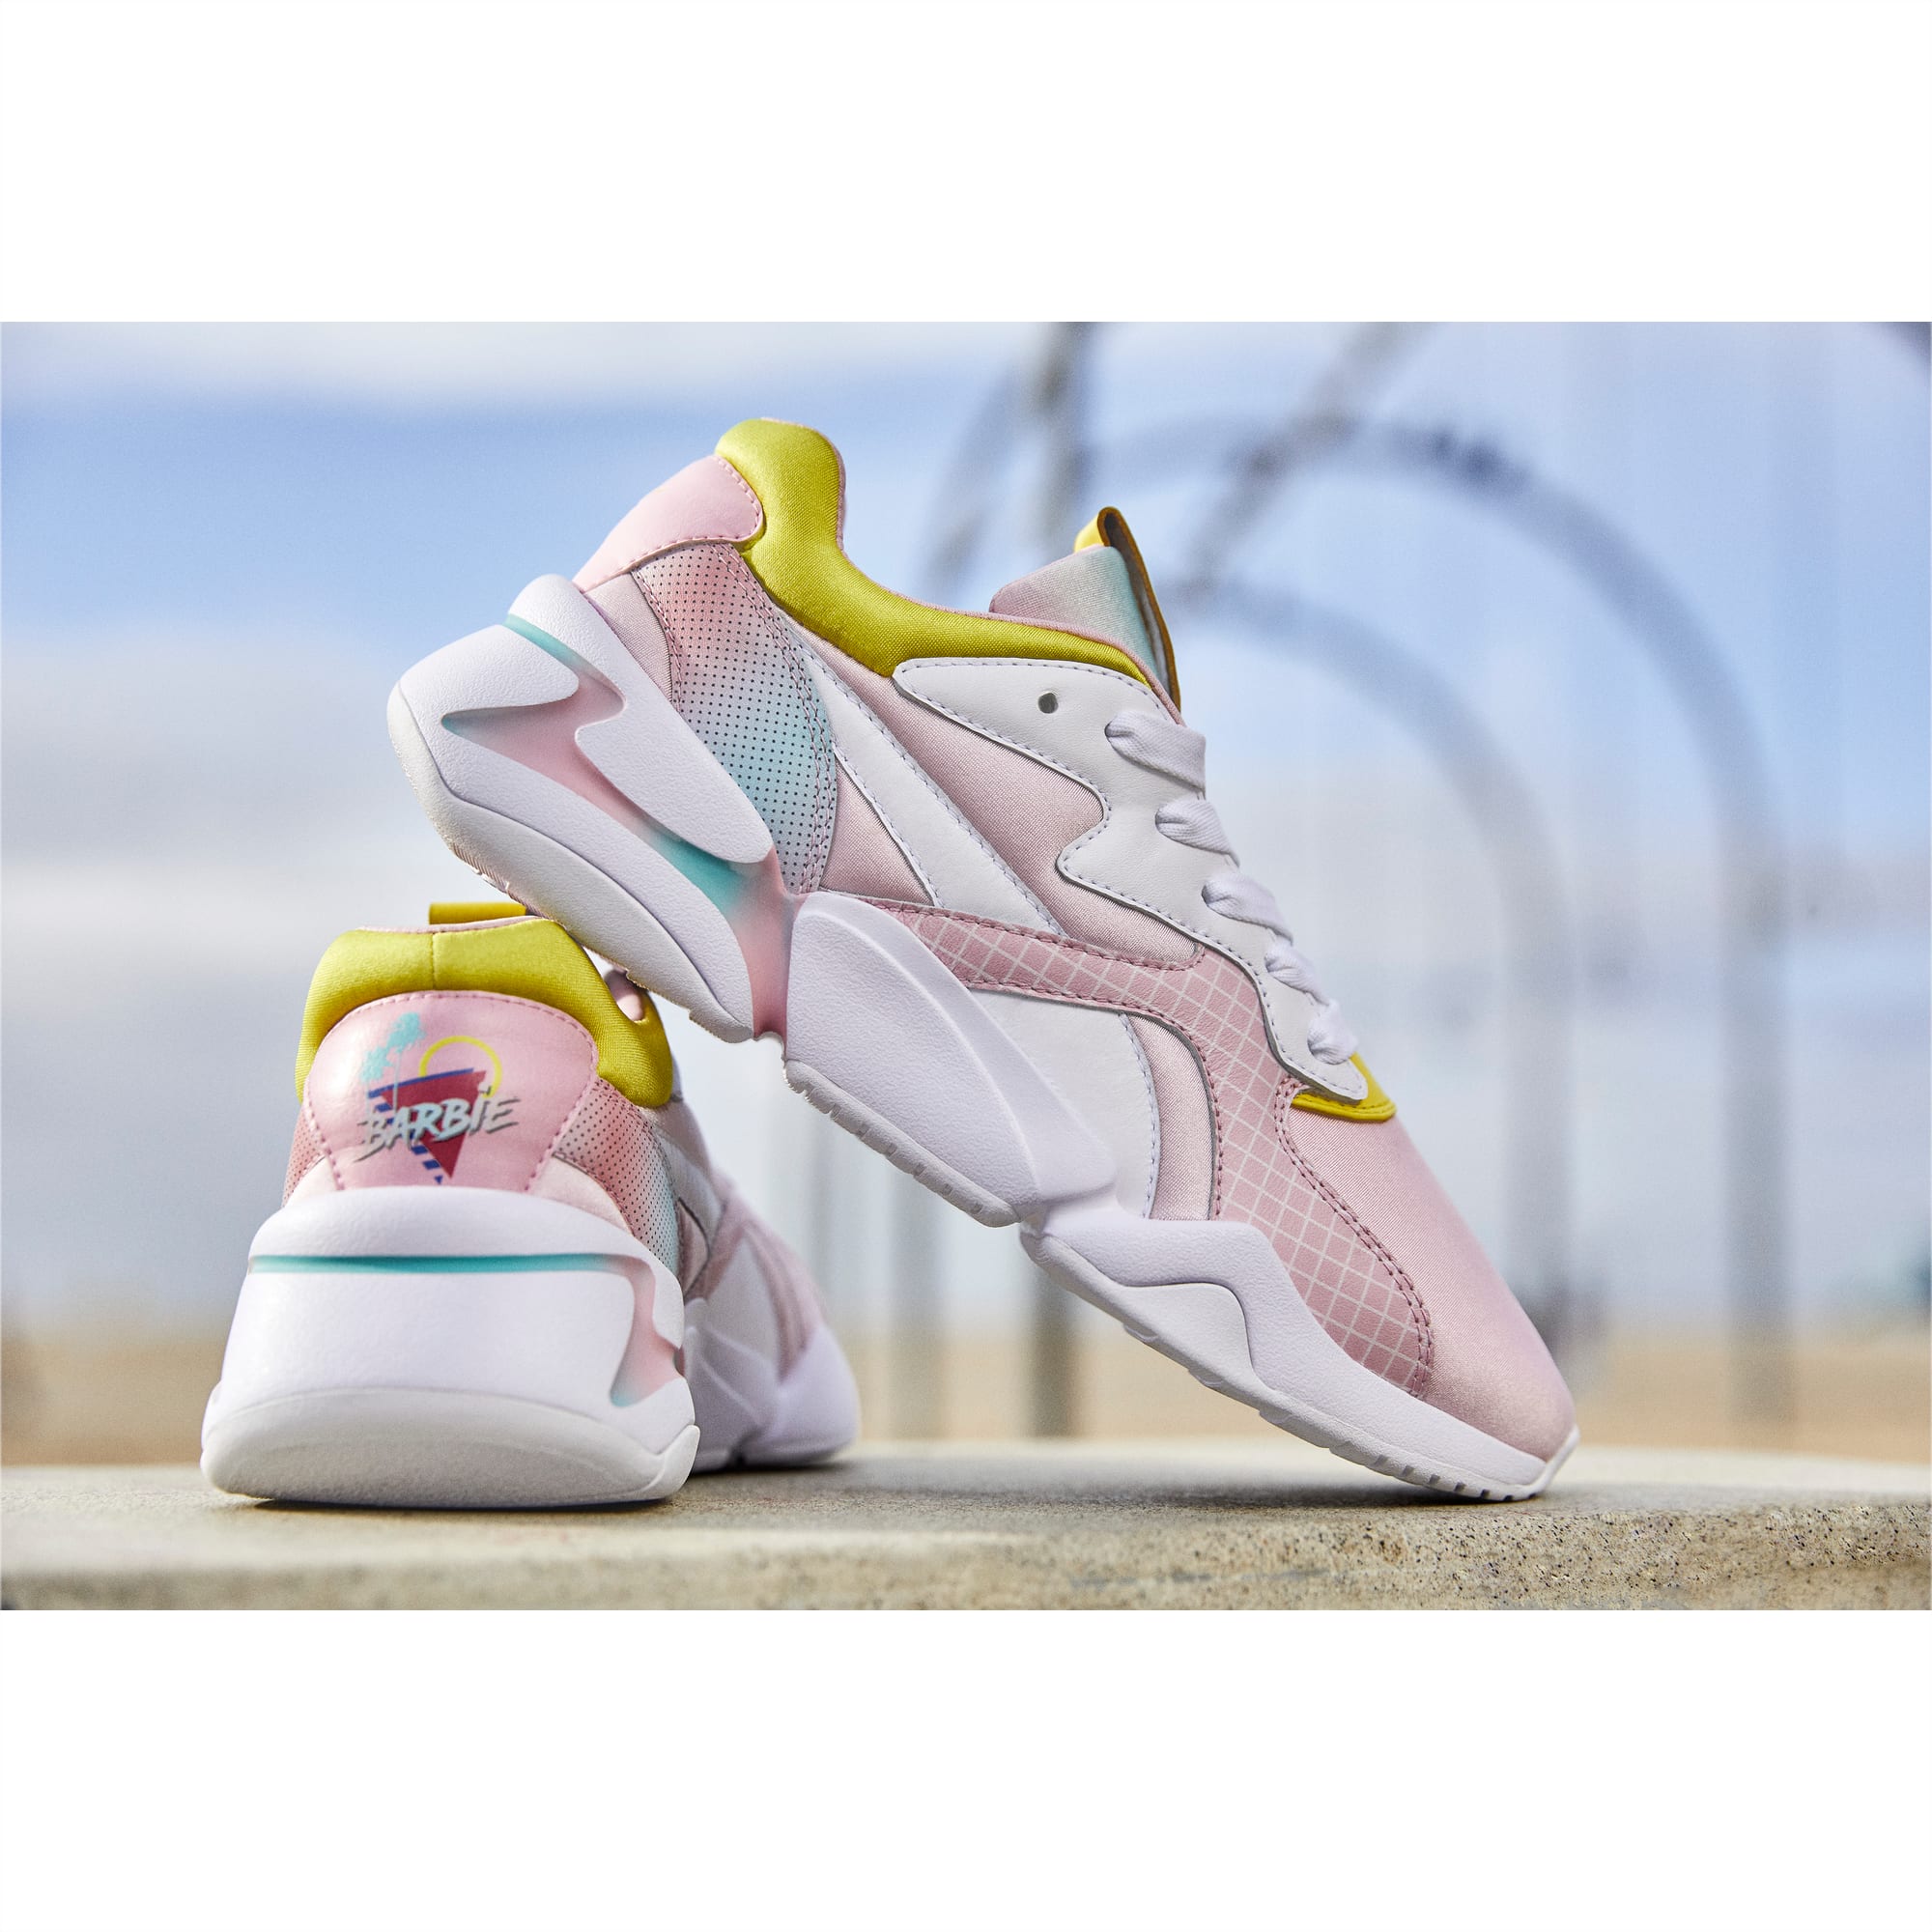 Nova x Barbie Little Kids' Shoes | PUMA US